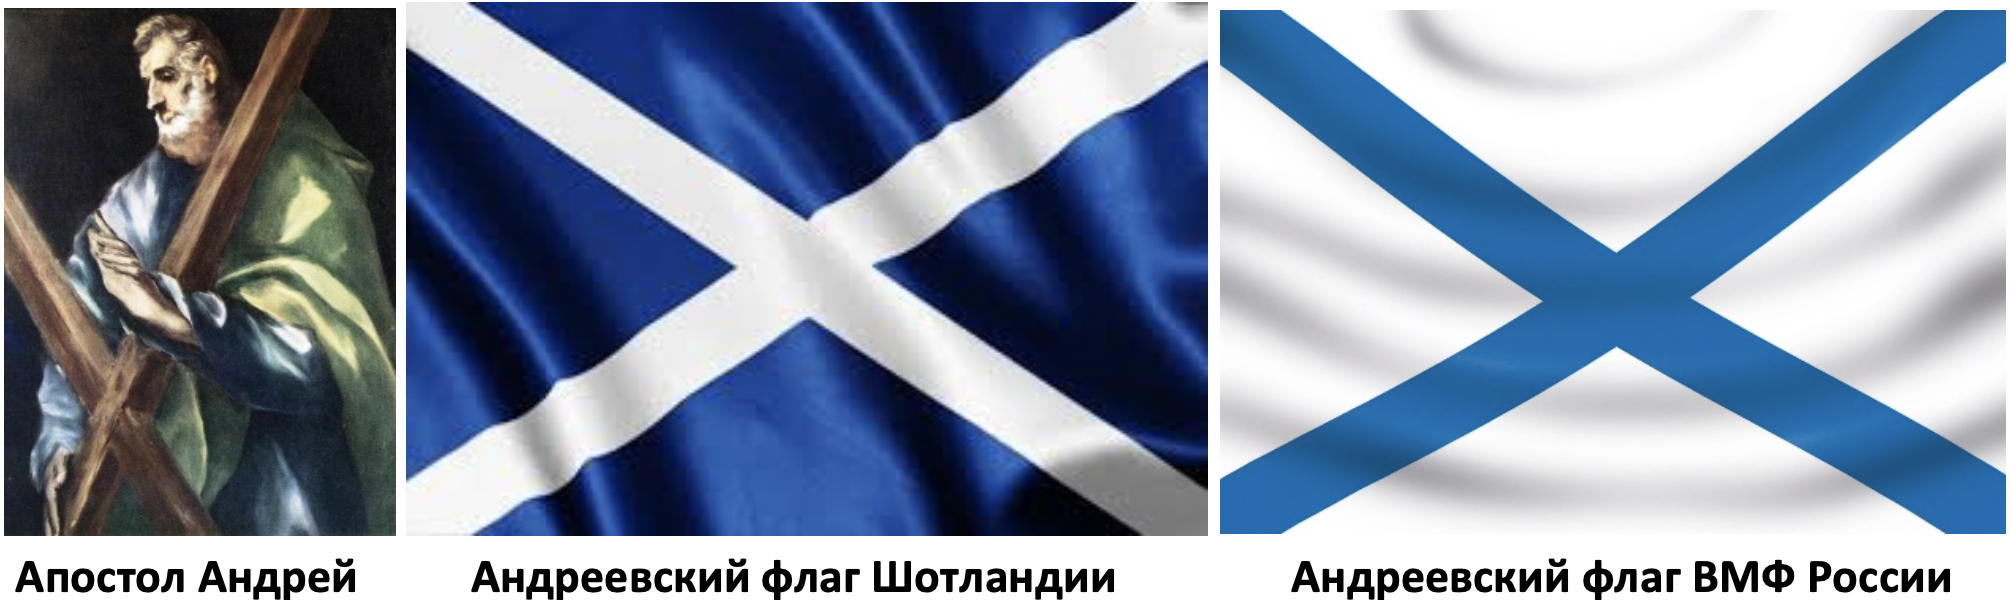 Флаг андреевский крест. Флаг Шотландии и Андреевский флаг. Военно морской Андреевский флаг. Андреевский флаг ВМФ.